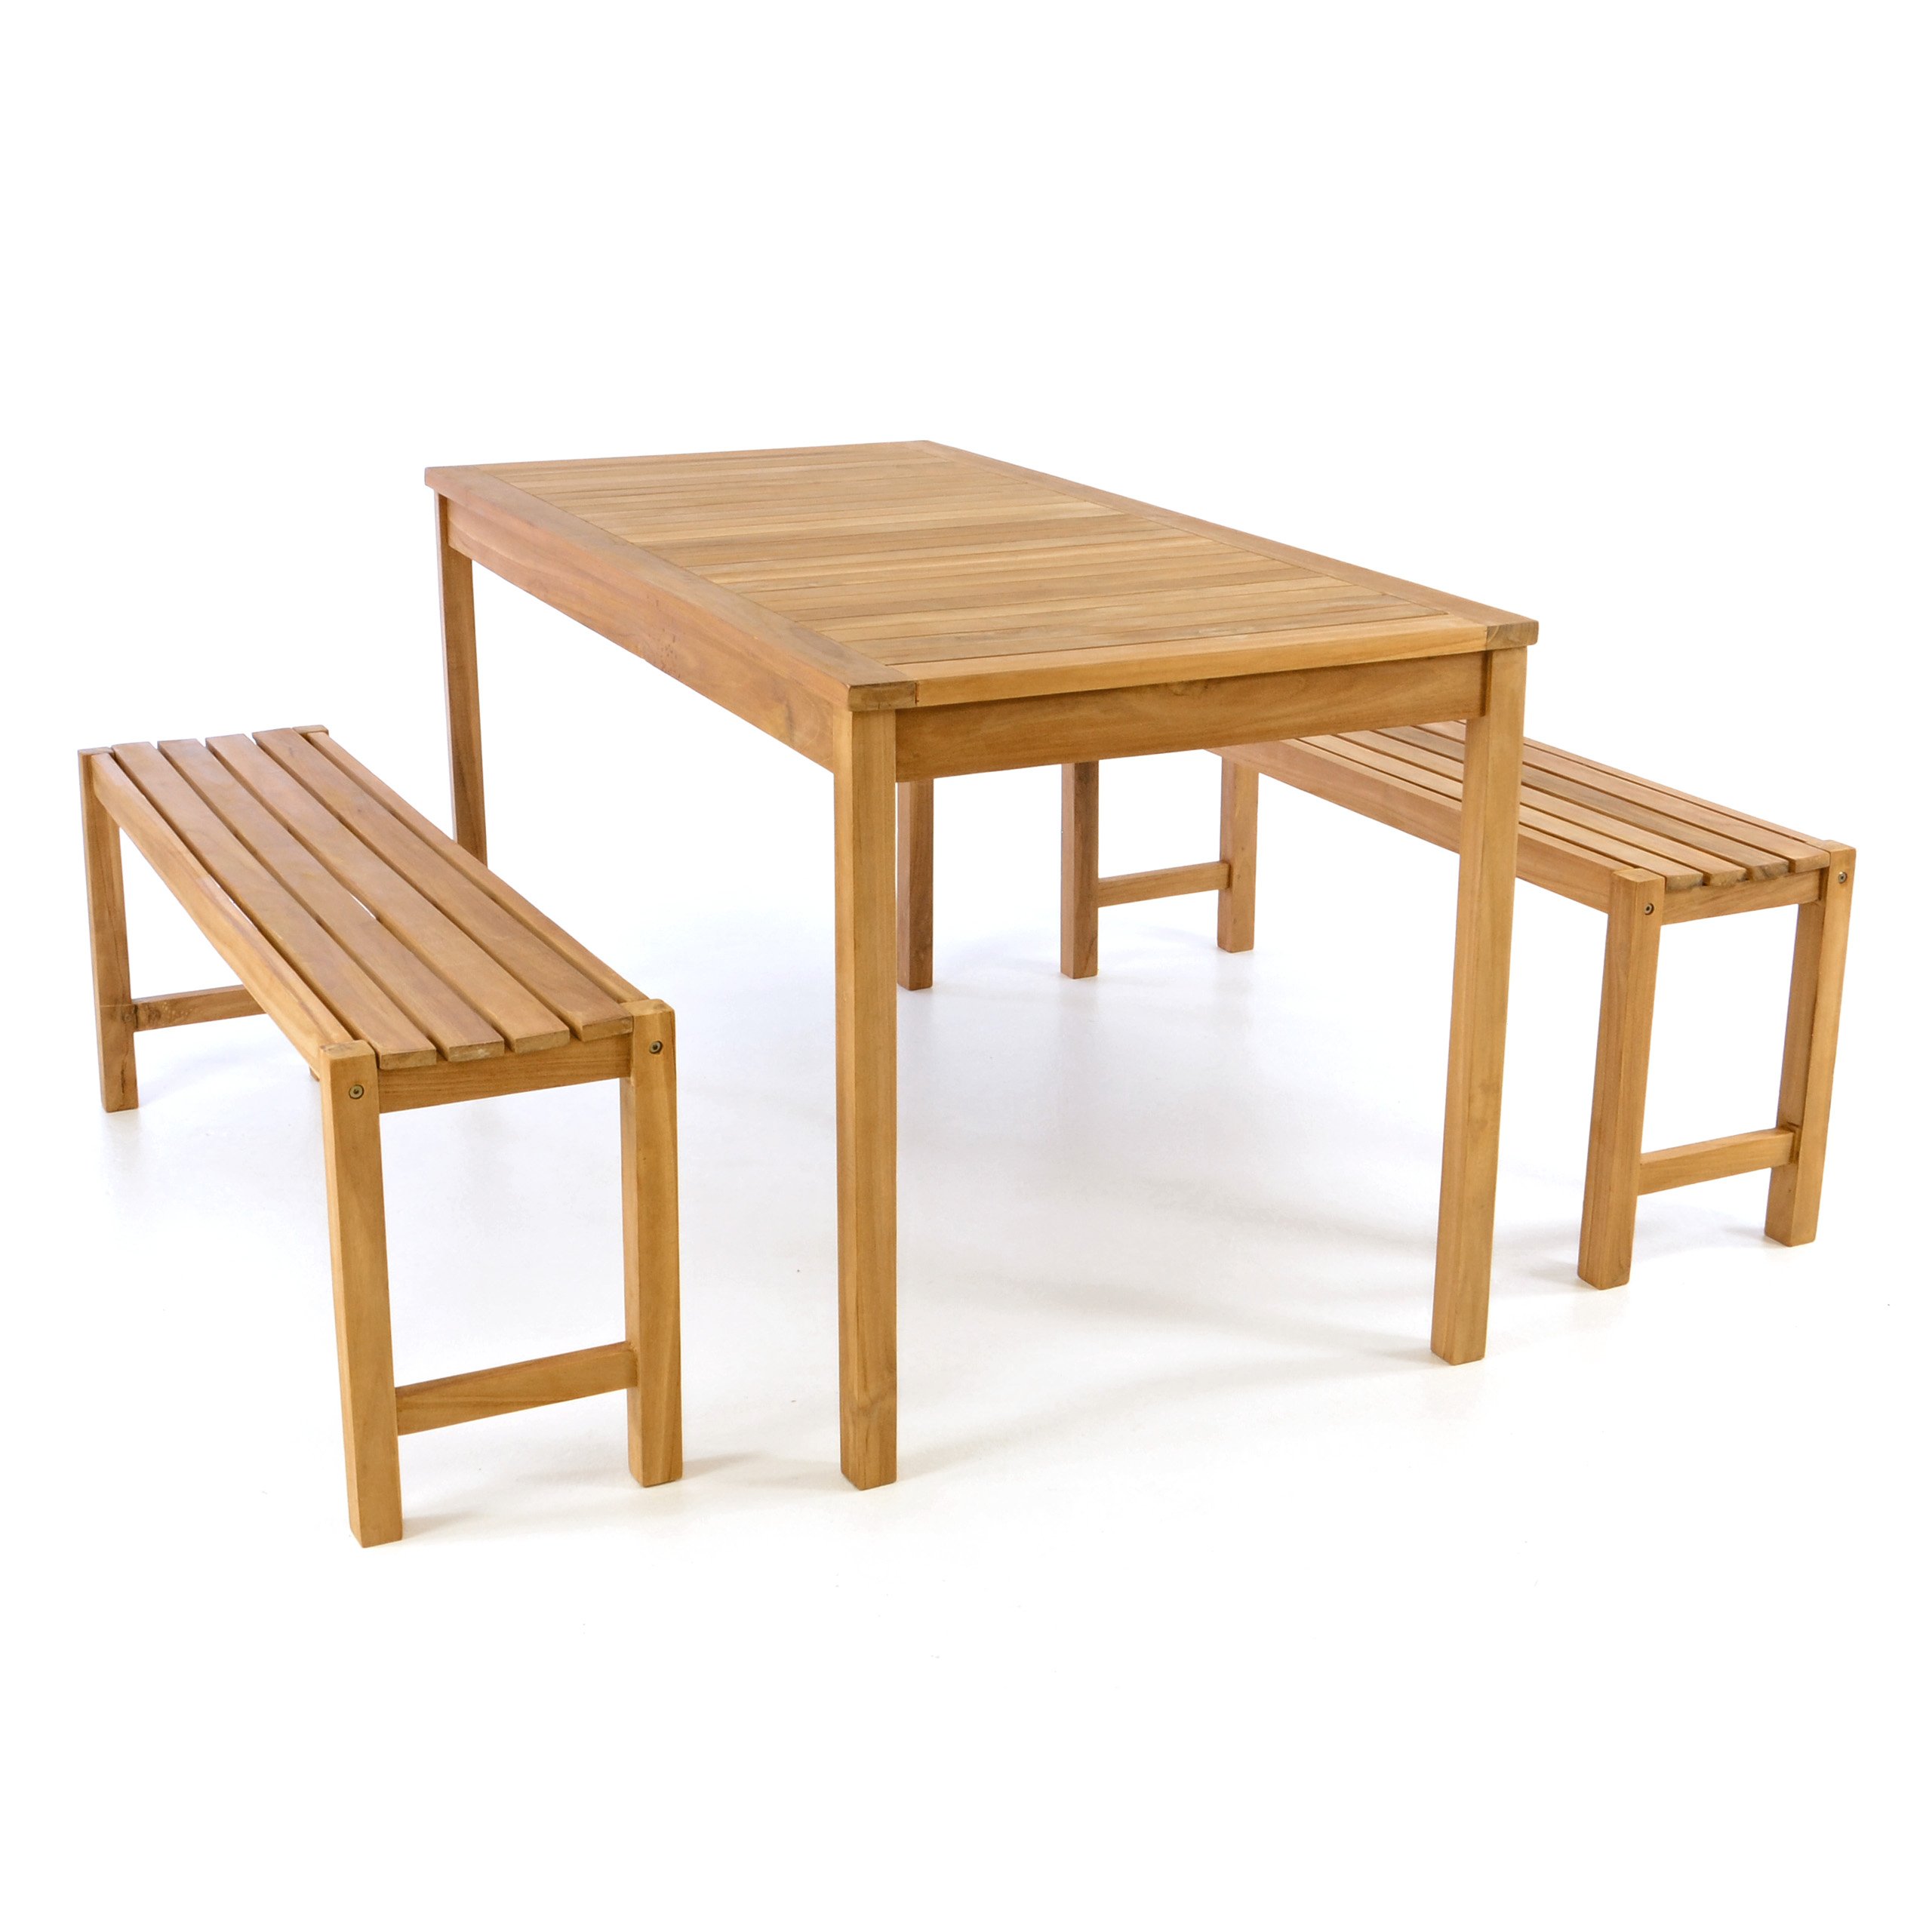 Divero Garten- & Picknick-Set Sitzgruppe Gartenmöbel-Garnitur 3-teilig 1 Tisch 2 Bänke behandelte unbehandelte Oberfläche Teak-Holz massiv 135 cm wählbar (135 cm, Teak Natur) (braun)